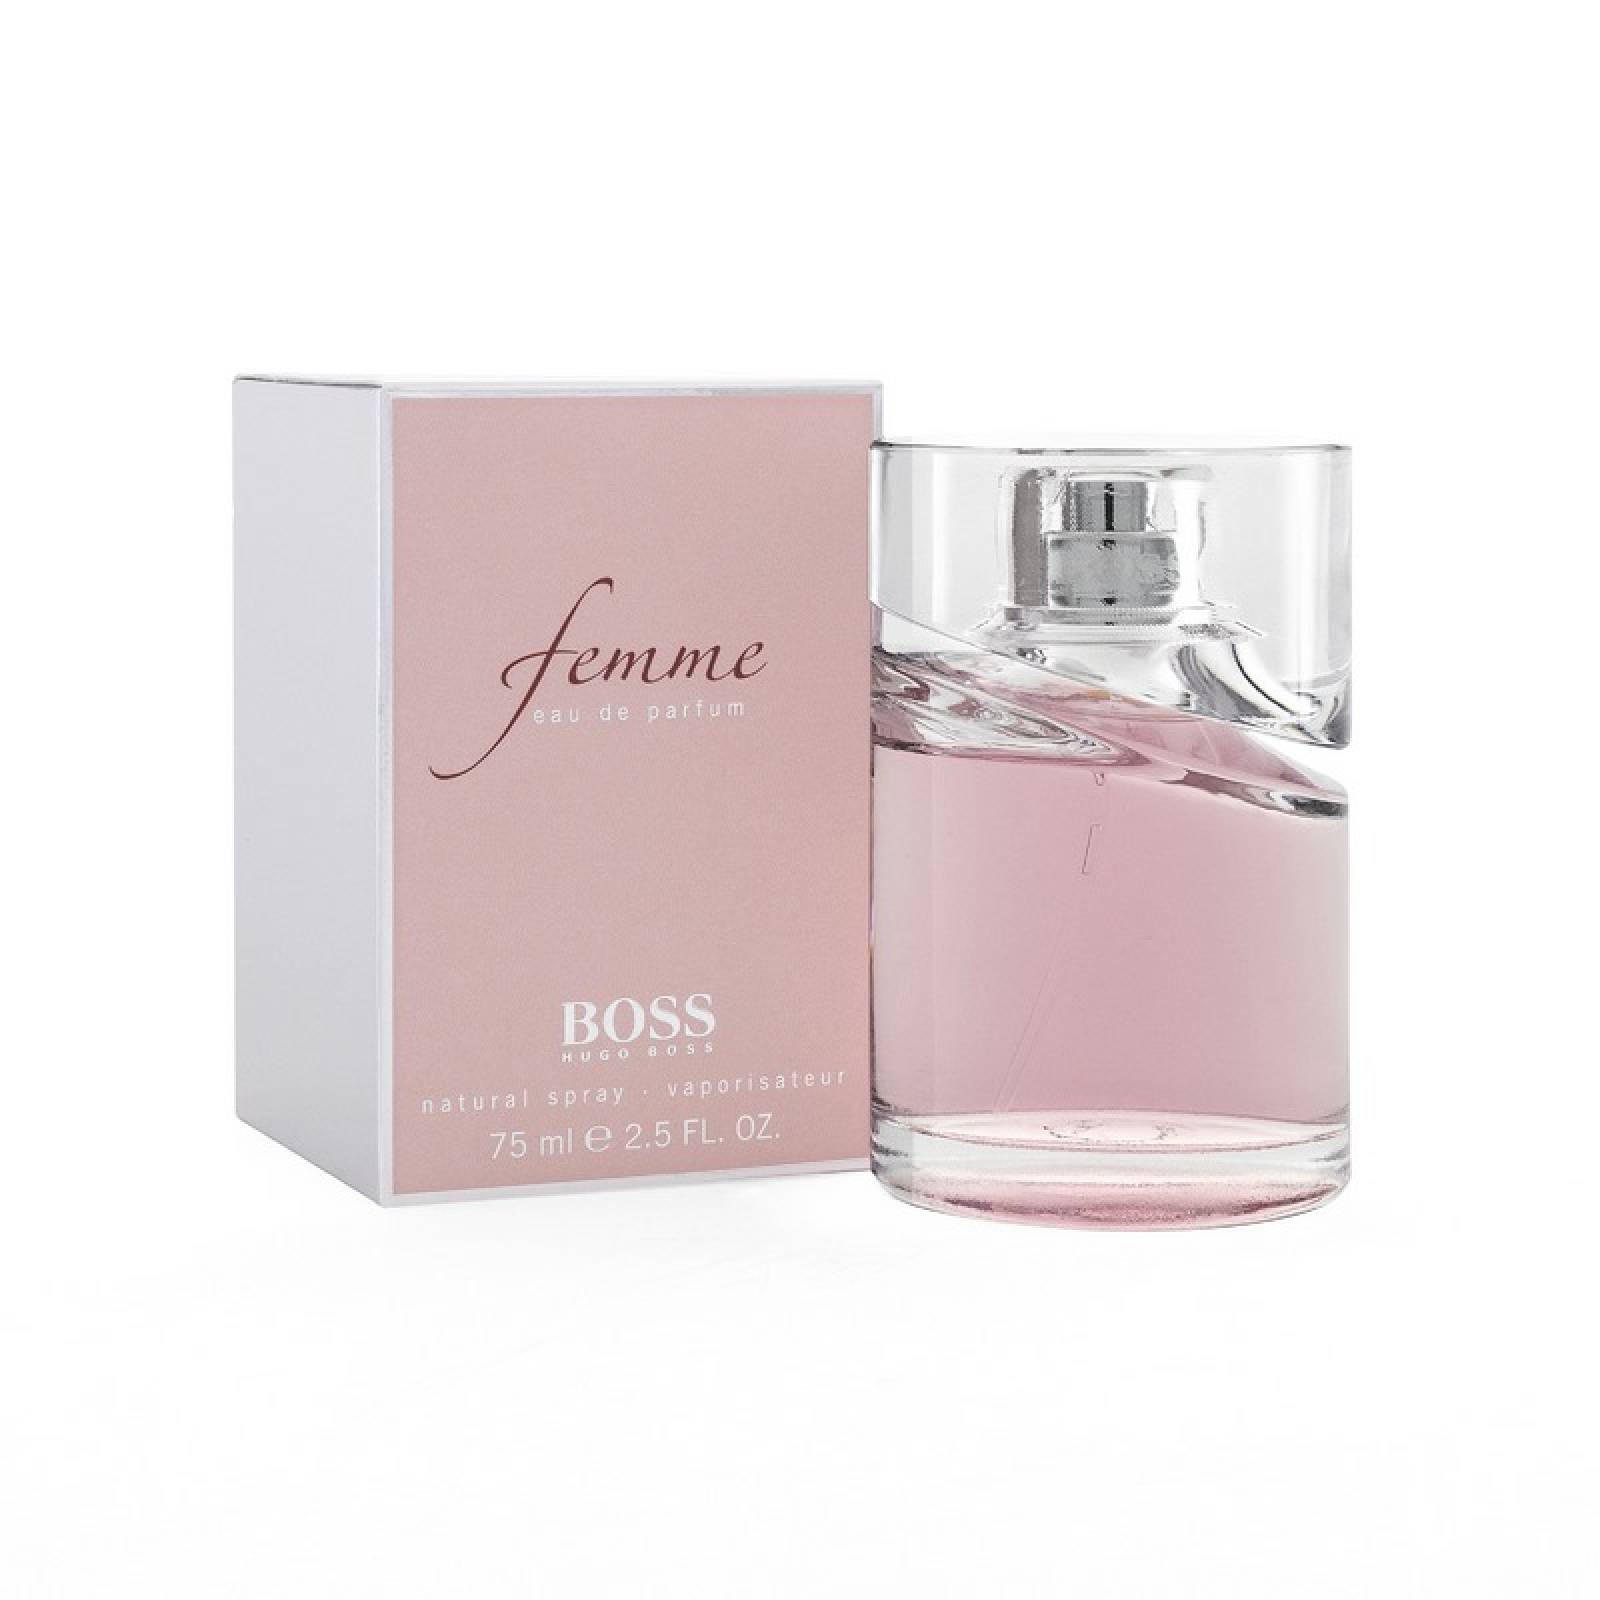 Boss Femme de Hugo Boss Eau de Parfum 75 ml Fragancia para Dama